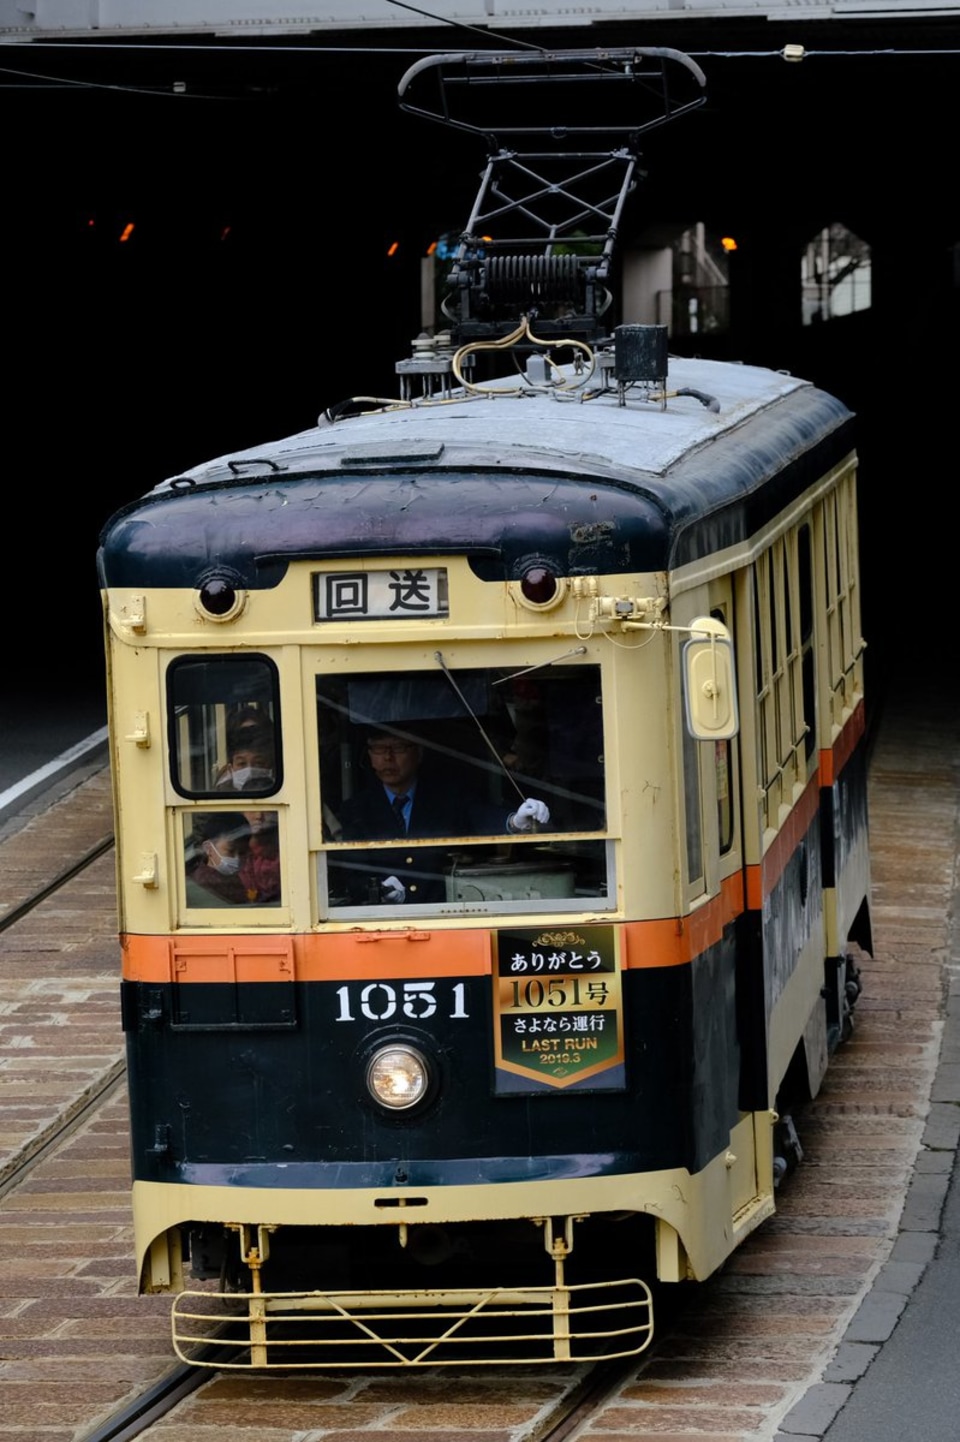 【長崎電軌】1051号(元仙台市電) さよなら運行の拡大写真